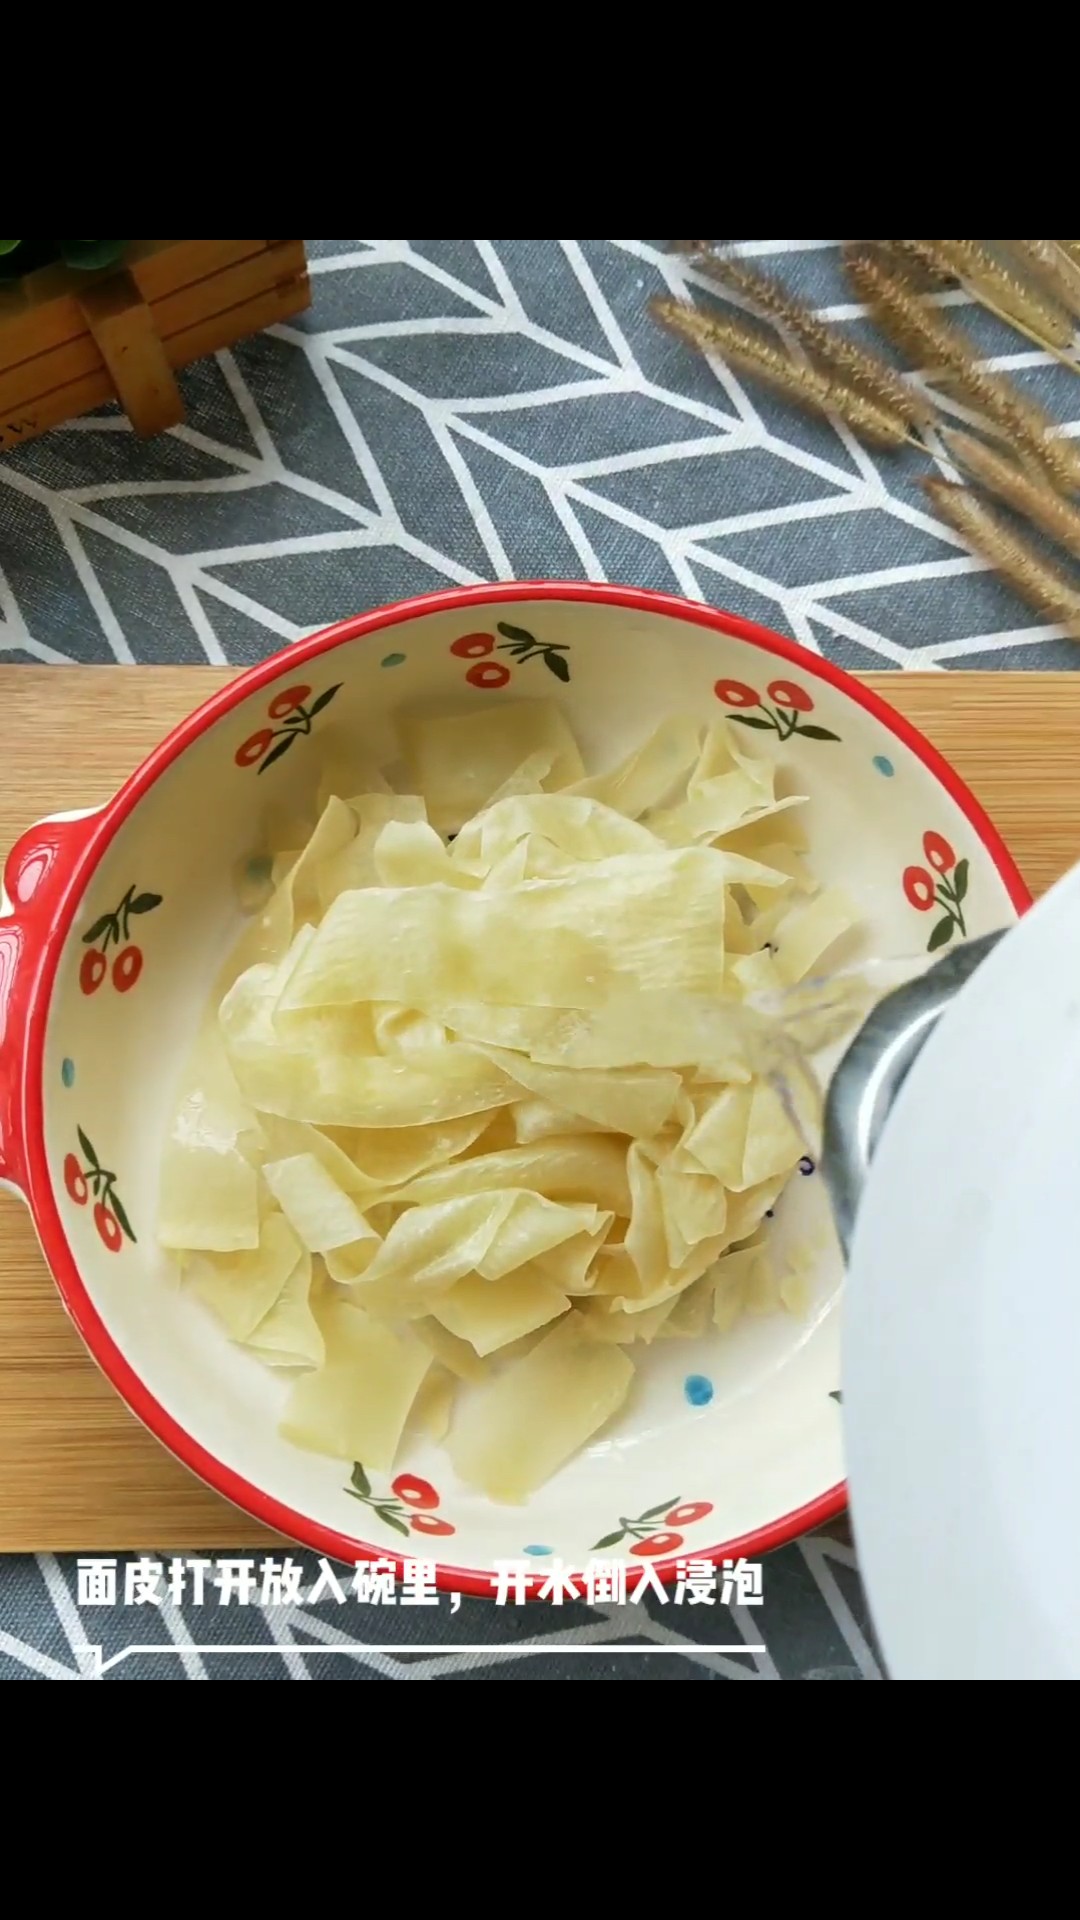 Red Oil Pasta recipe